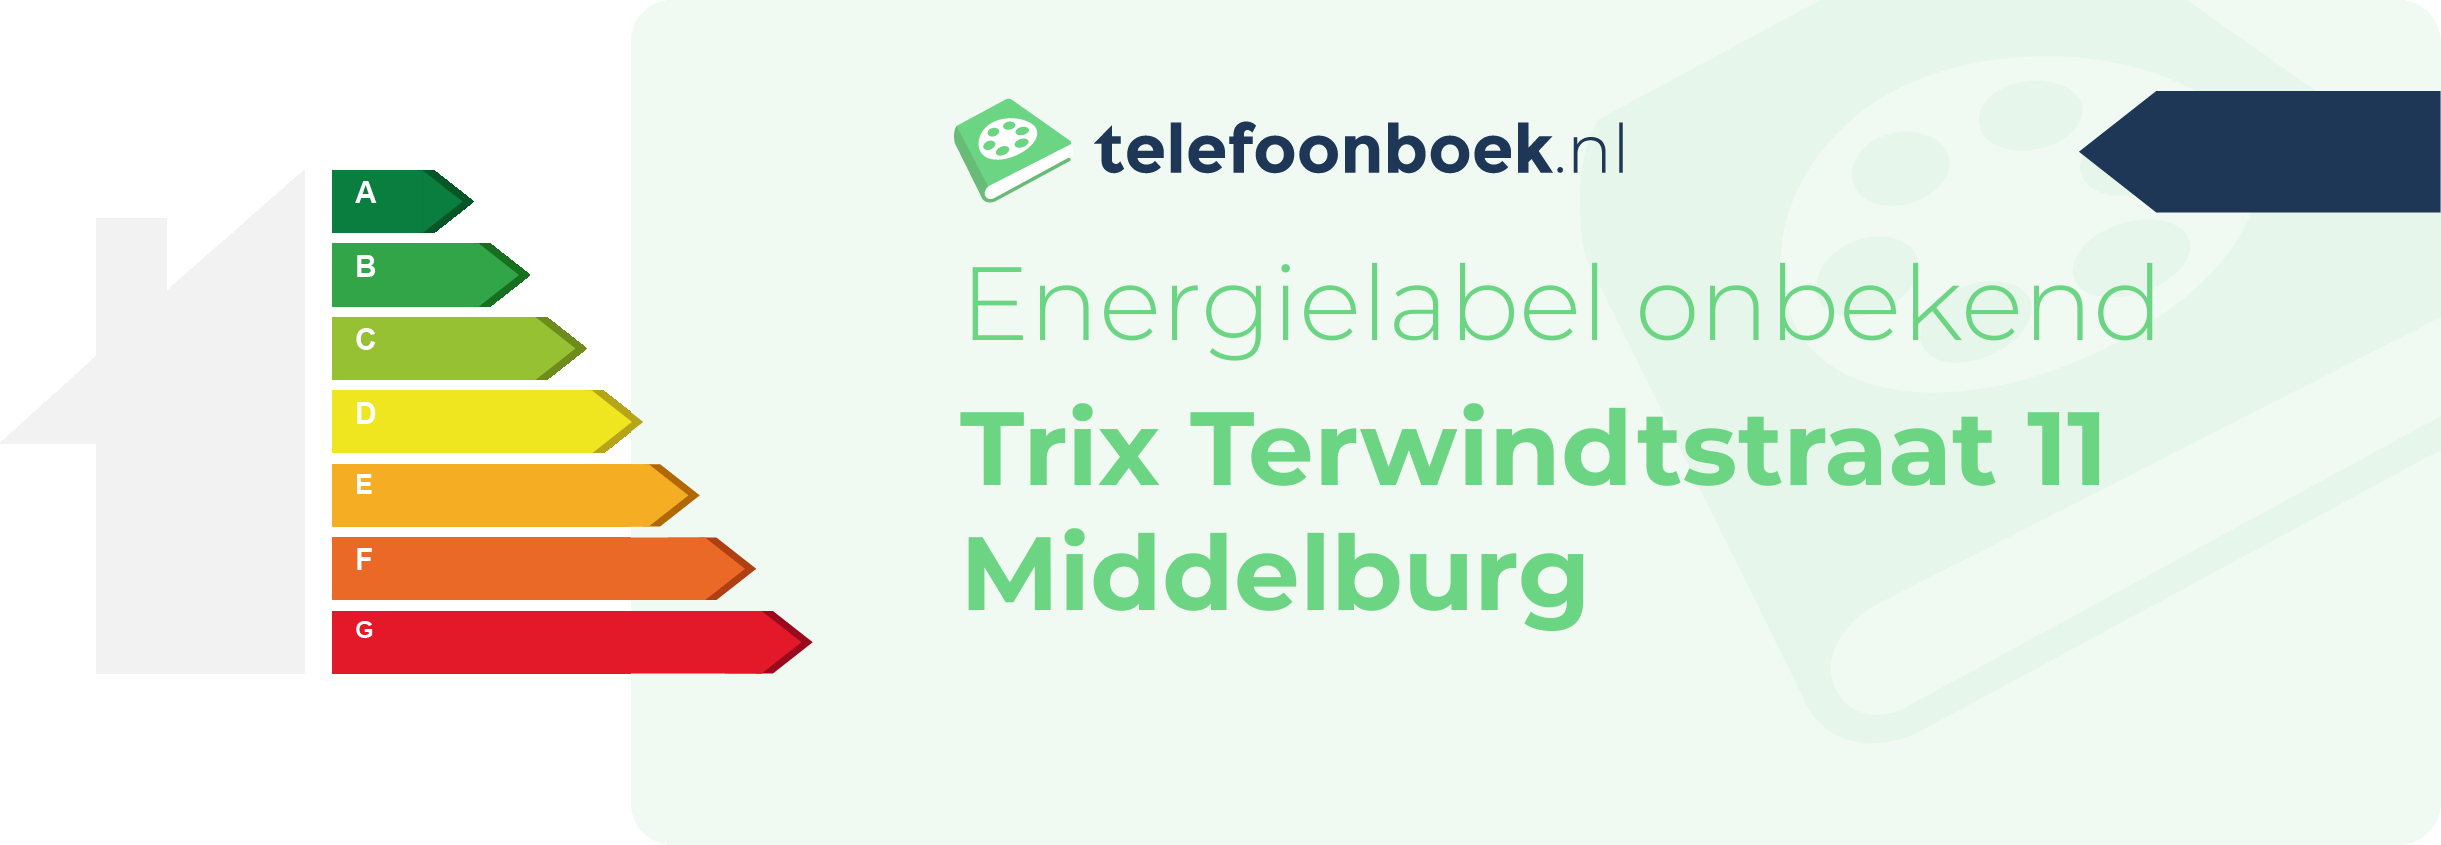 Energielabel Trix Terwindtstraat 11 Middelburg